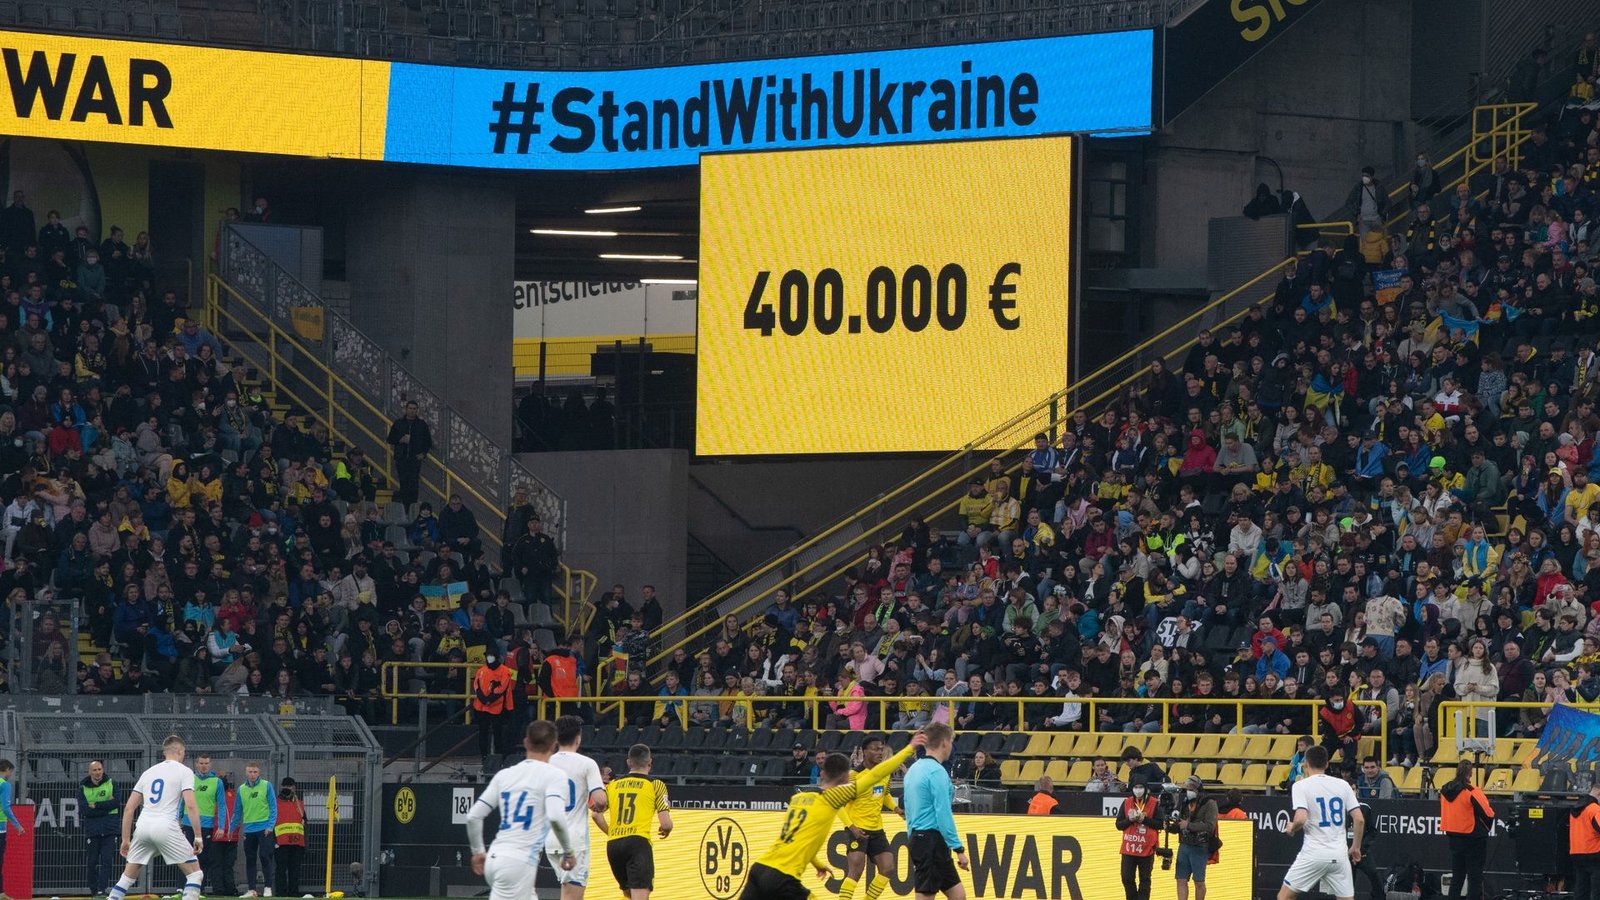 Beim Benefizspiel sind 400.000 Euro zusammengekommen, die Opfern des russischen Angriffs auf die Ukraine zugute kommen sollen.Foto: Bernd Thissen/dpa